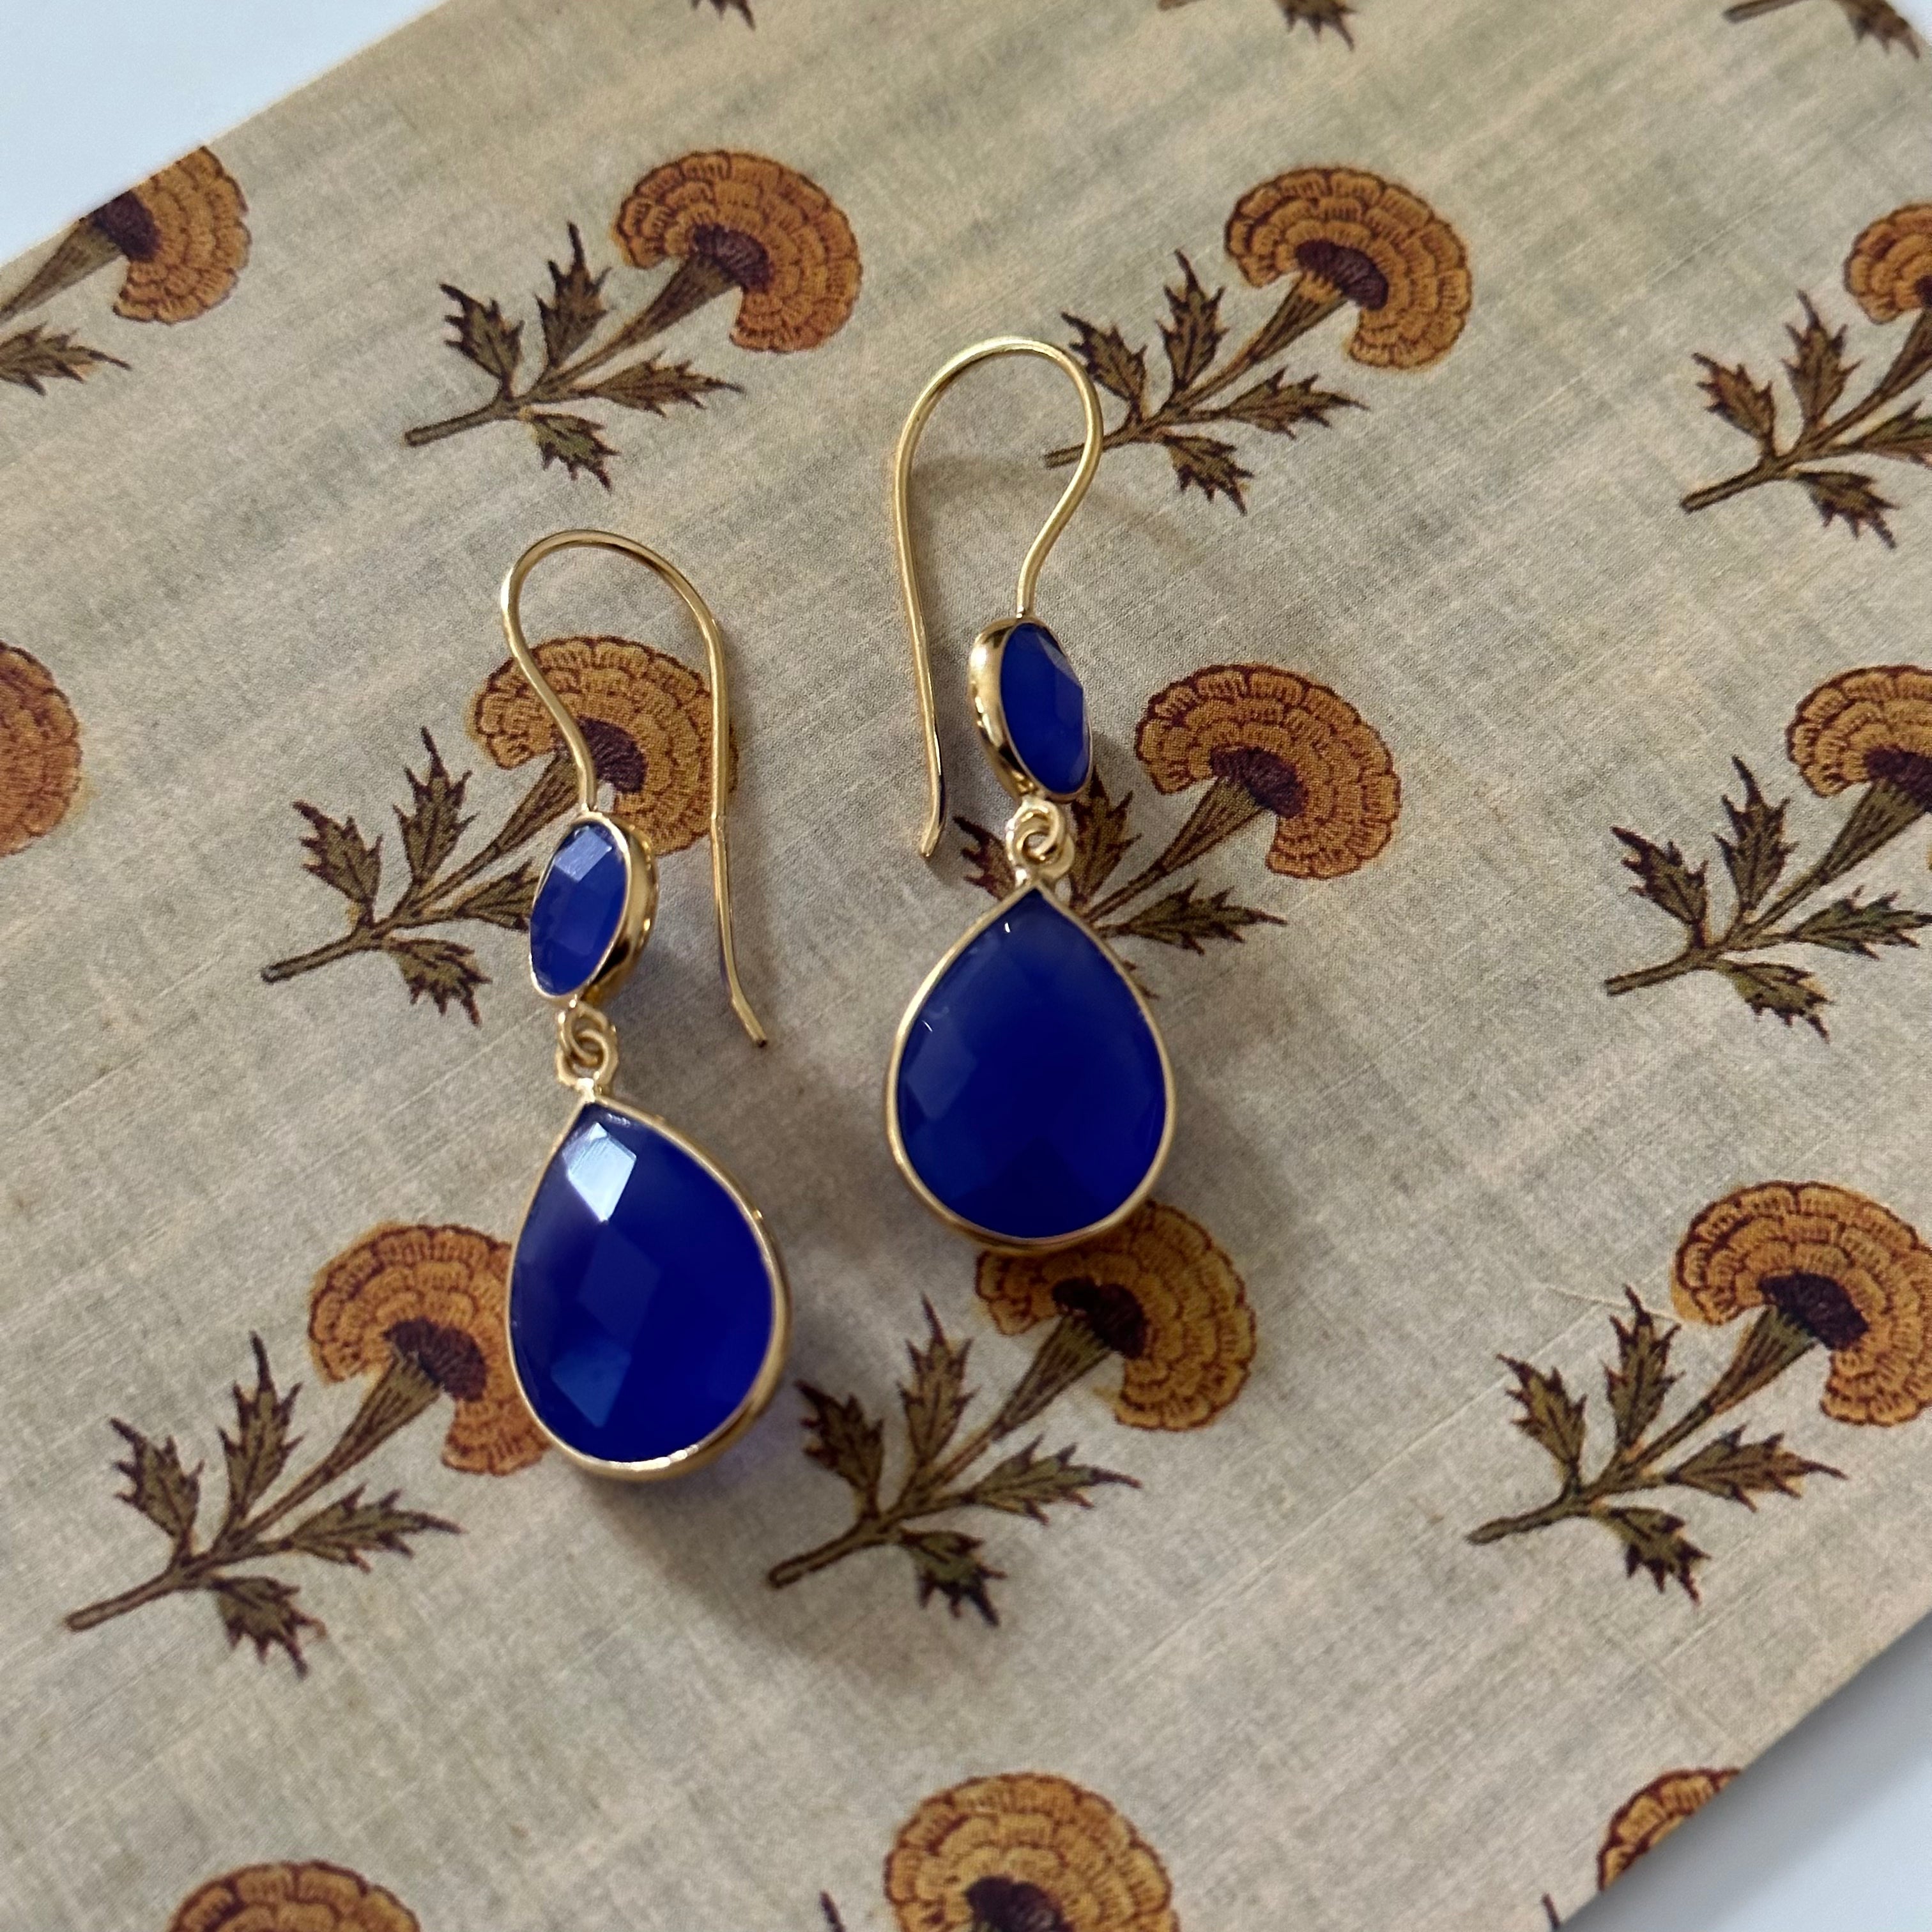 Blue Chalcedony Gemstone Two Stone Earrings in Gold Plated Sterling Silver - Teardrop